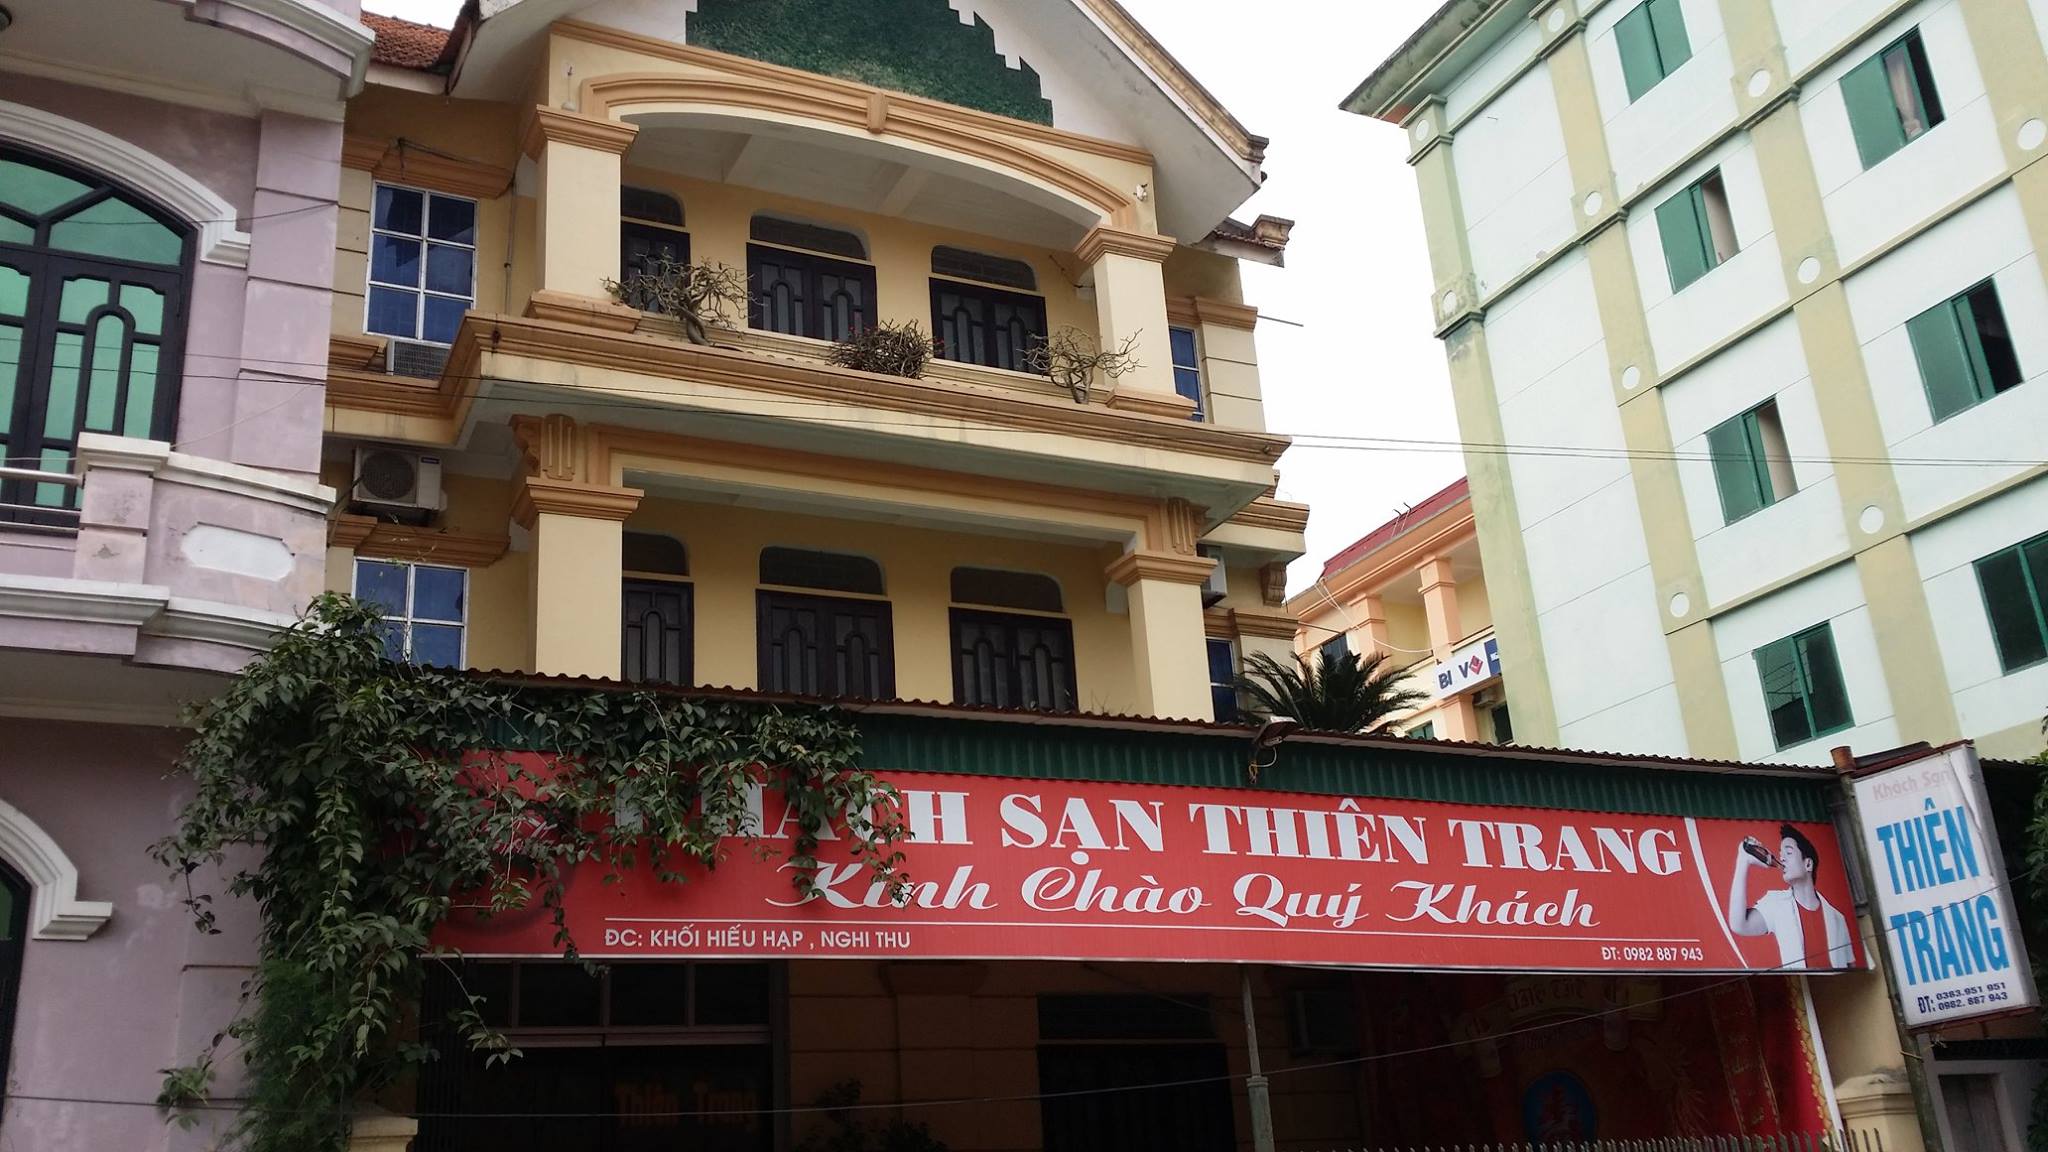 Khách sạn Thiên Trang